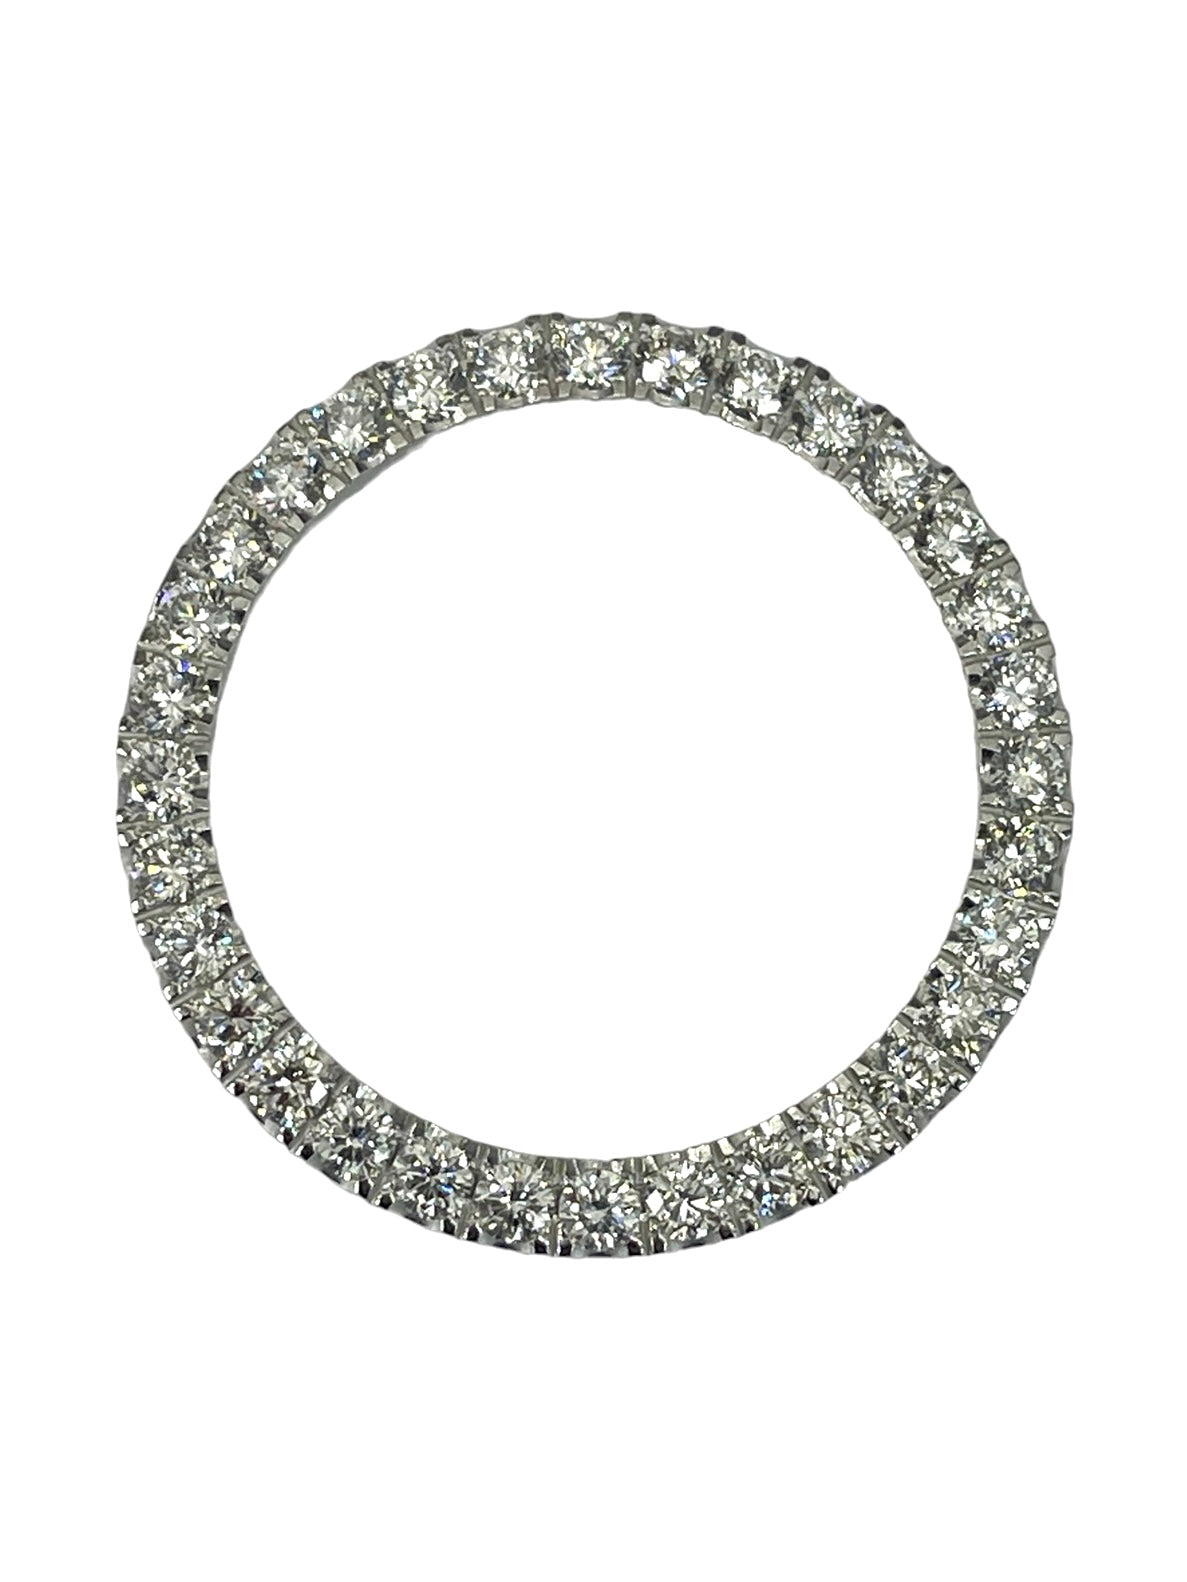 Diamond Bezel Crown For Rolex 40mm White Gold 14kt